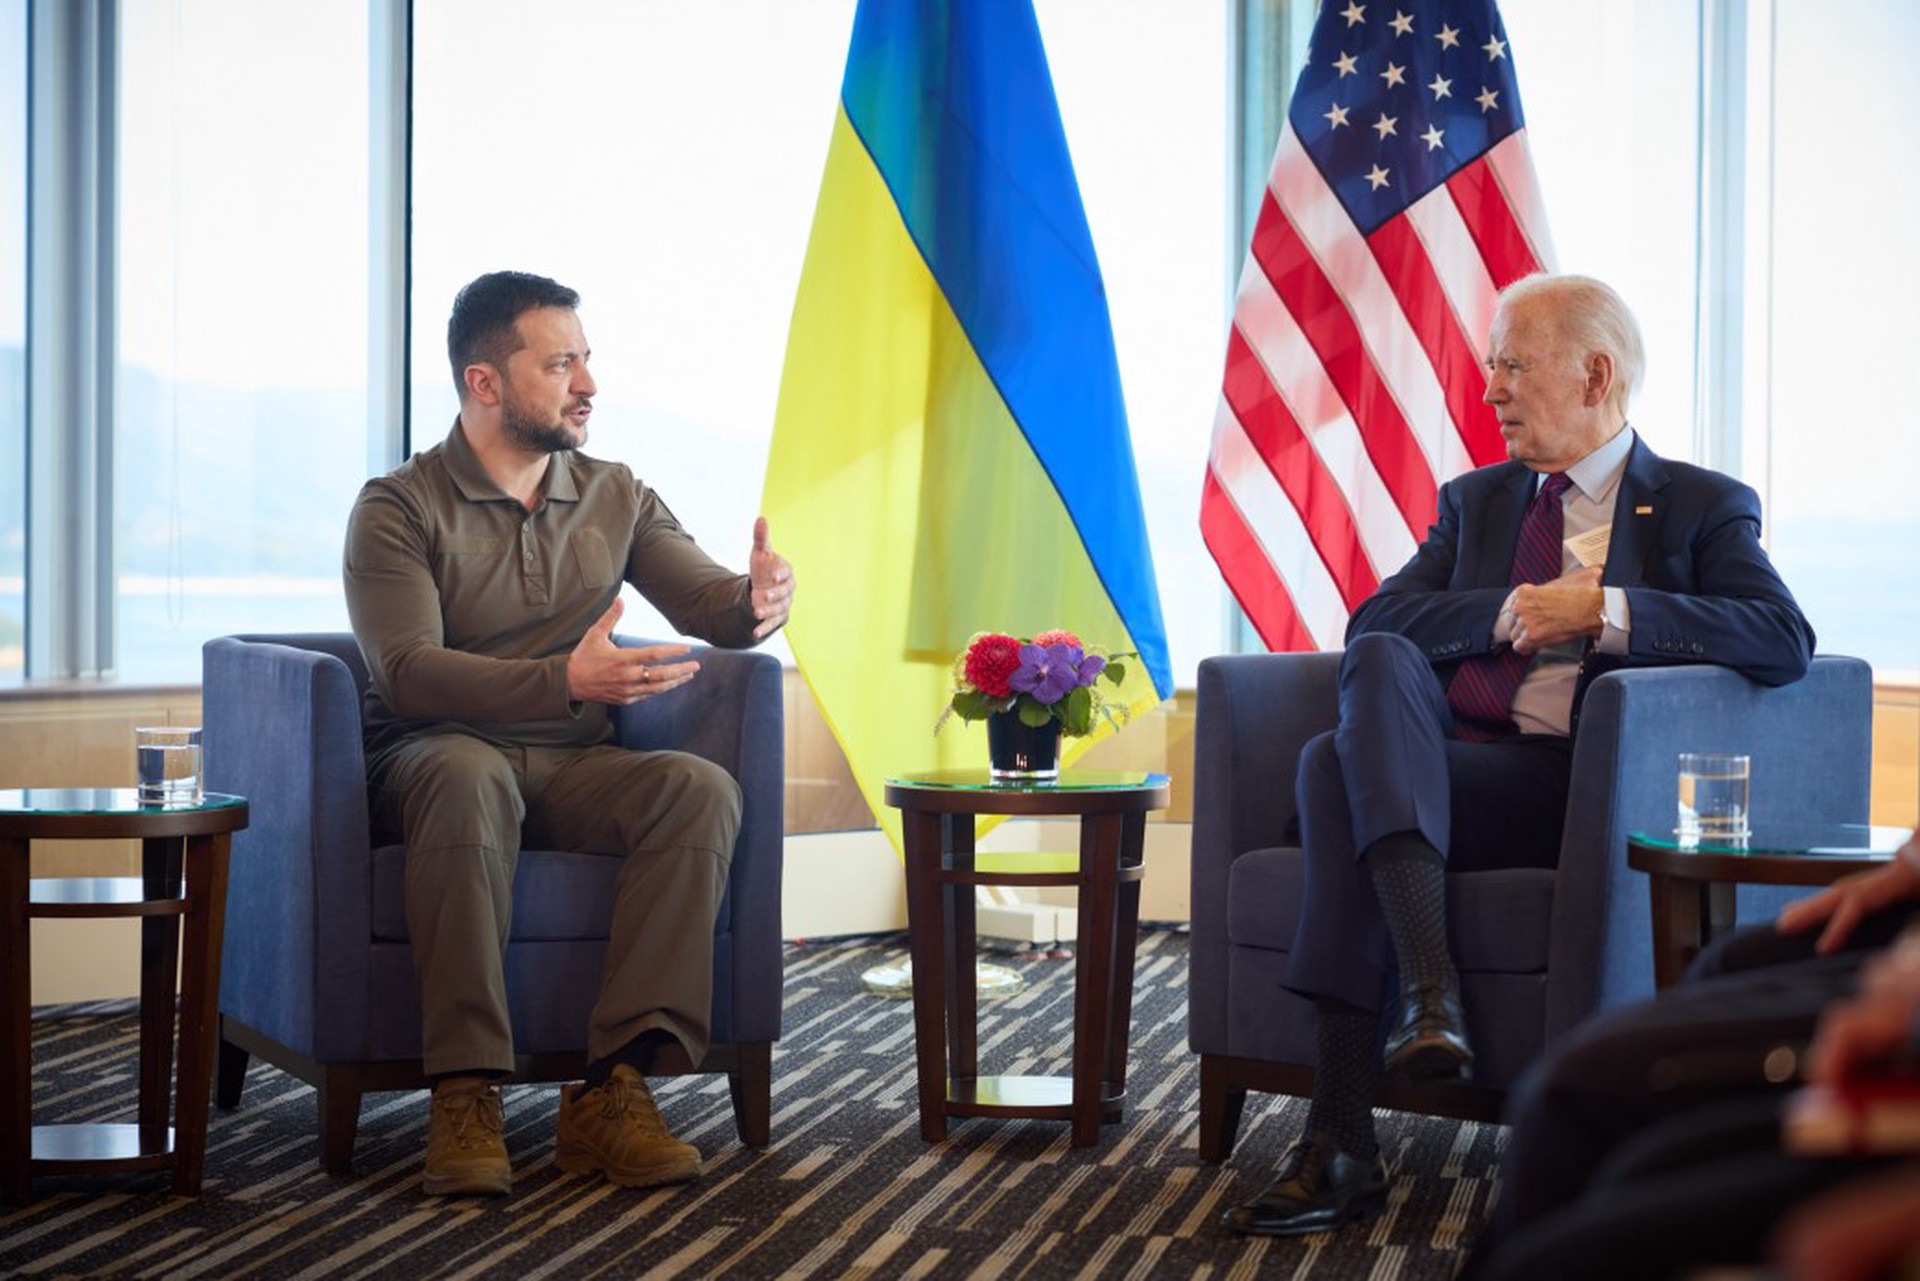 Зеленский на встрече с Байденом попросил о гарантиях безопасности для Украины до её вступления в НАТО